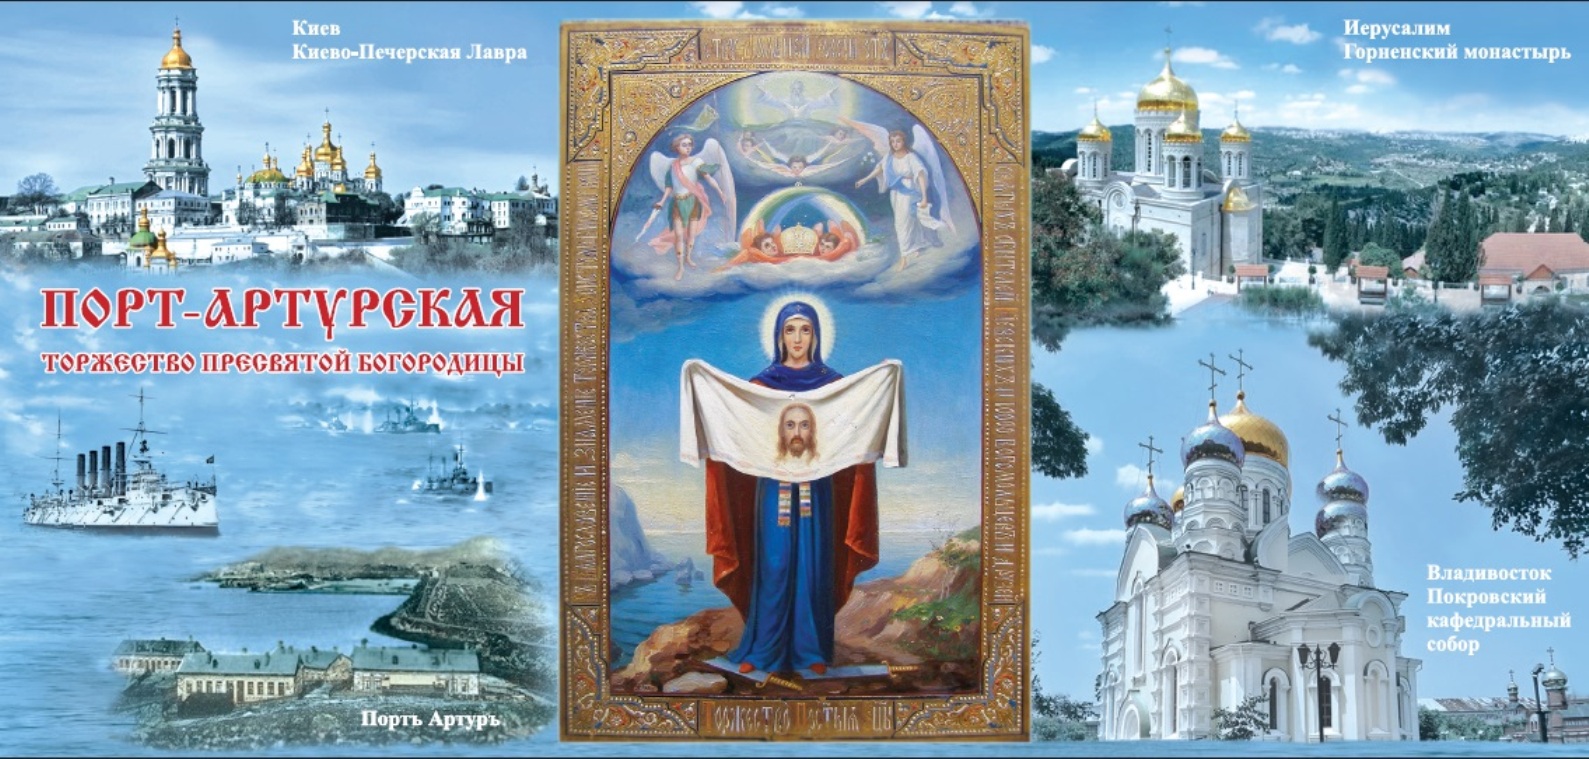 Порт-Артурская икона Божией матери Владивосток